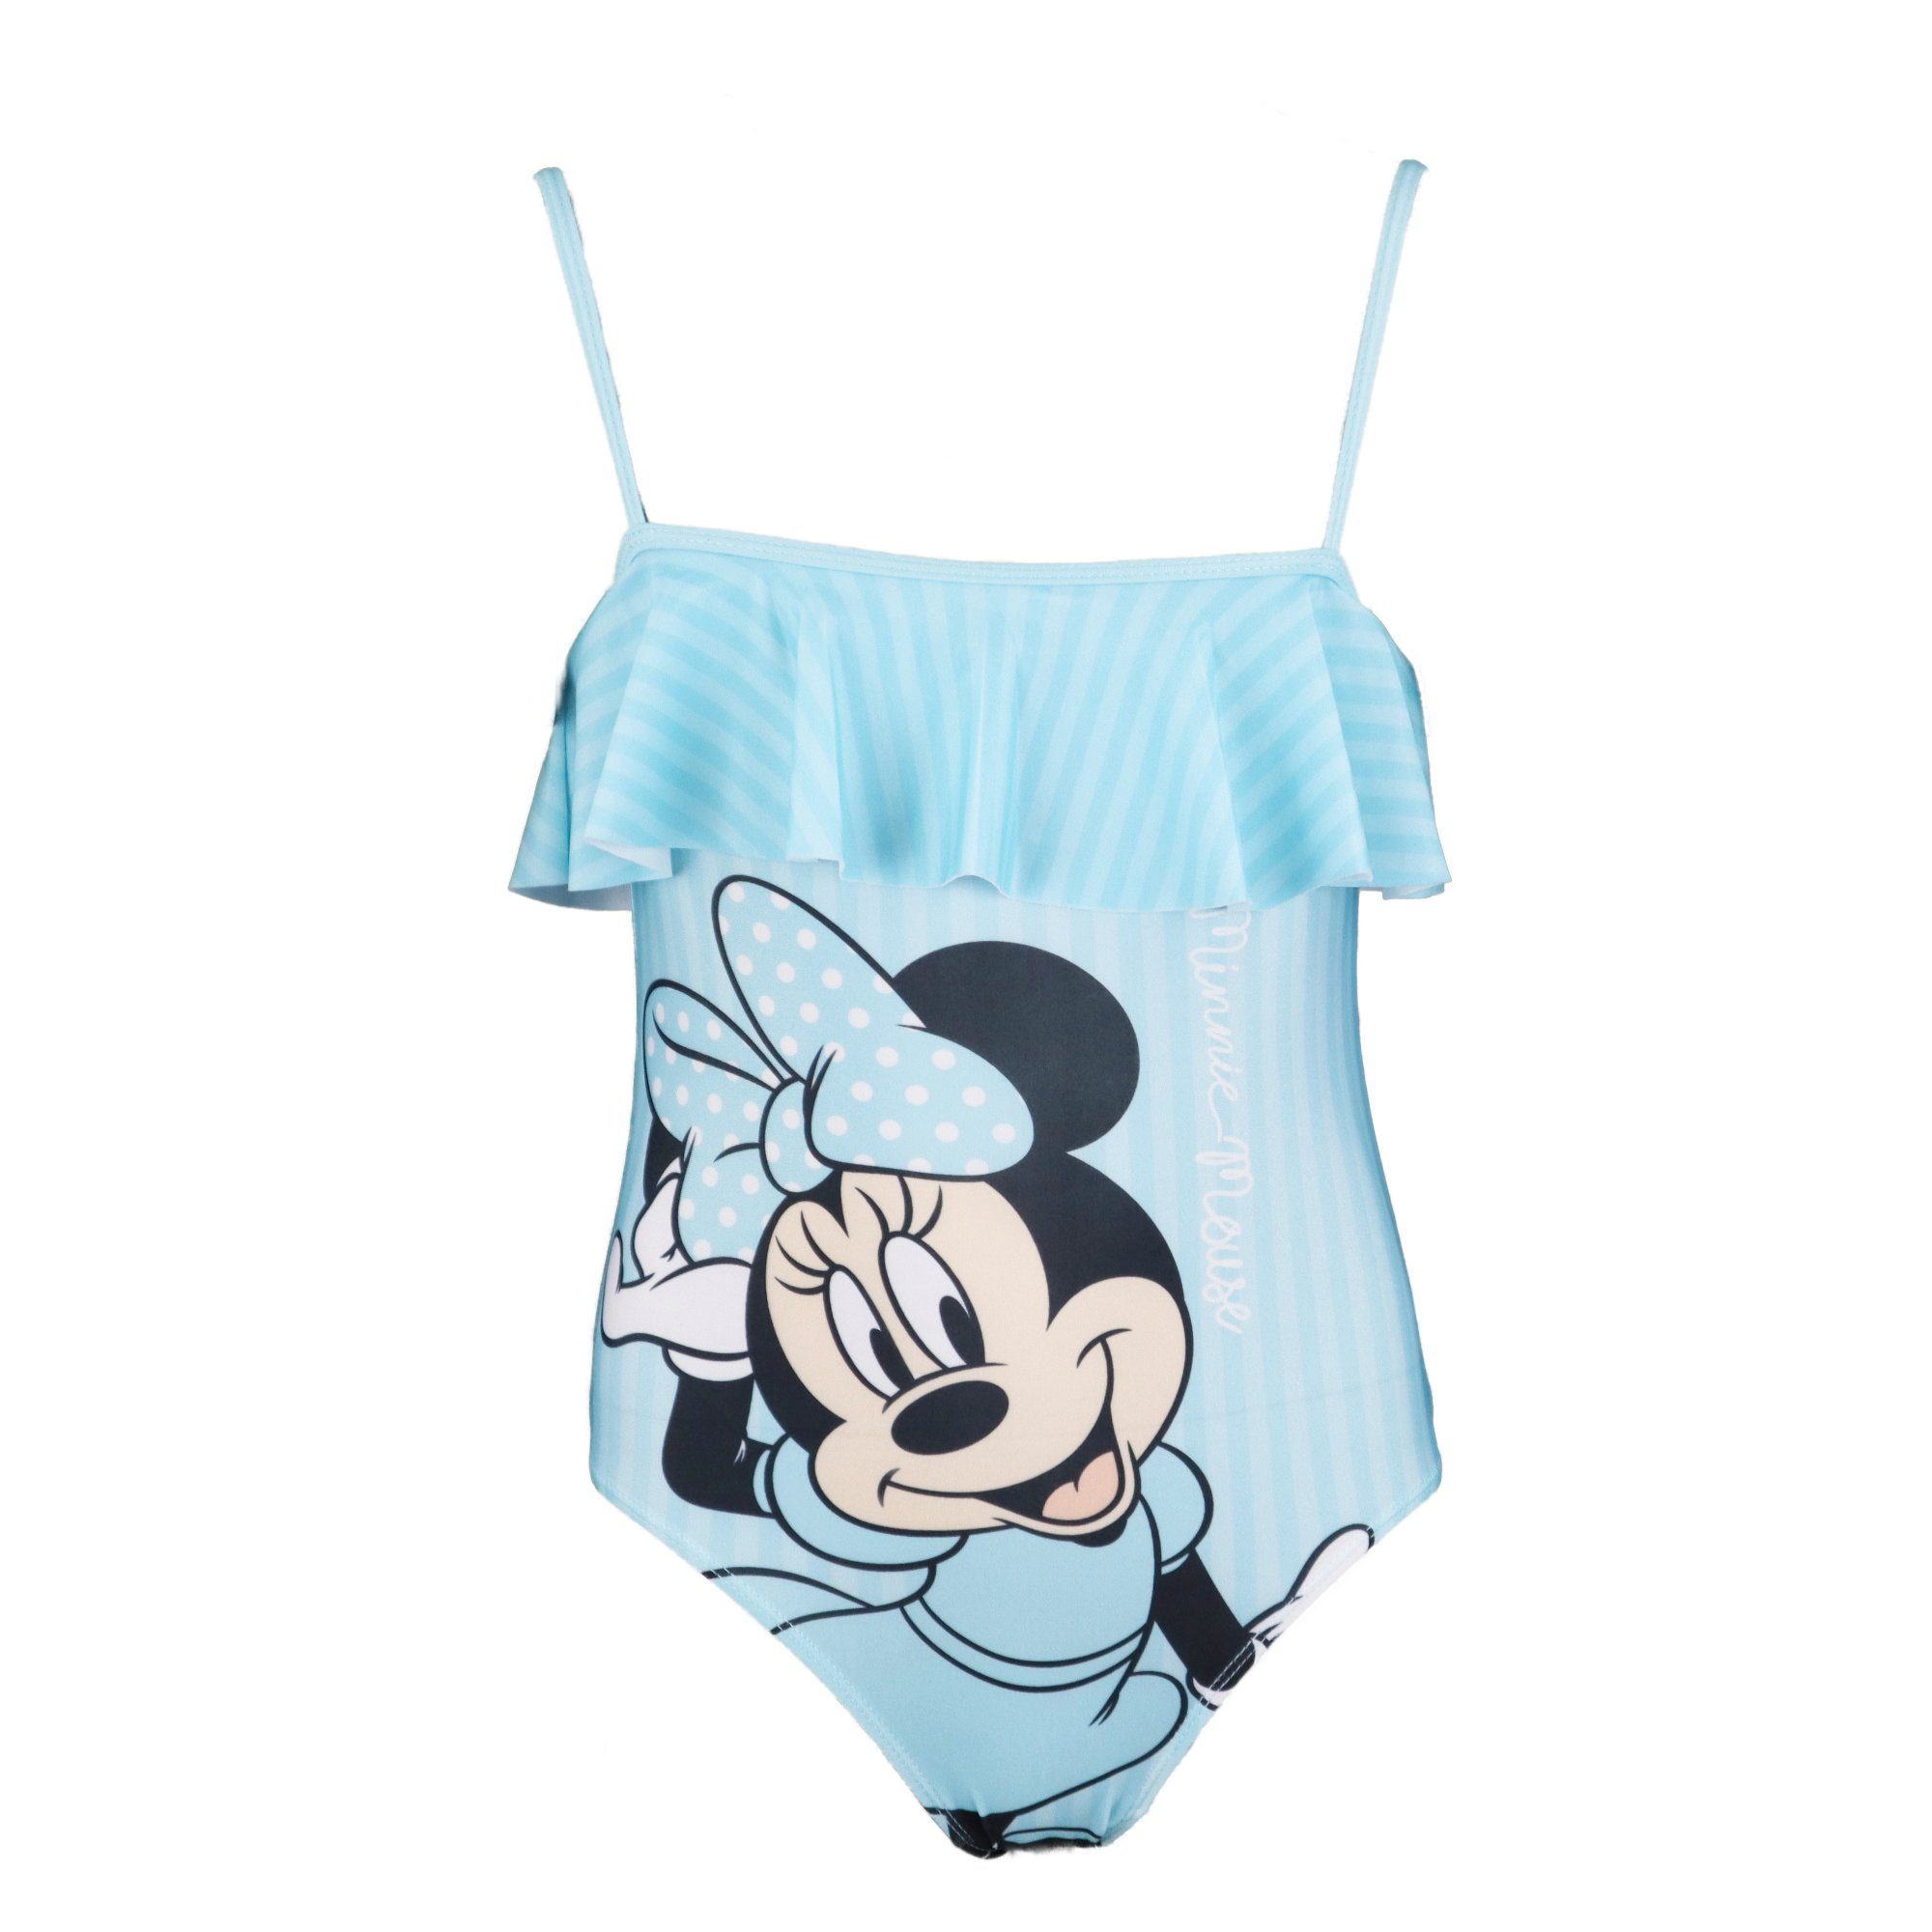 Mouse Streifen Mädchen Blau bis Gr. Kinder 134, 104 oder Disney bademode Badeanzug Pink Minnie Minnie